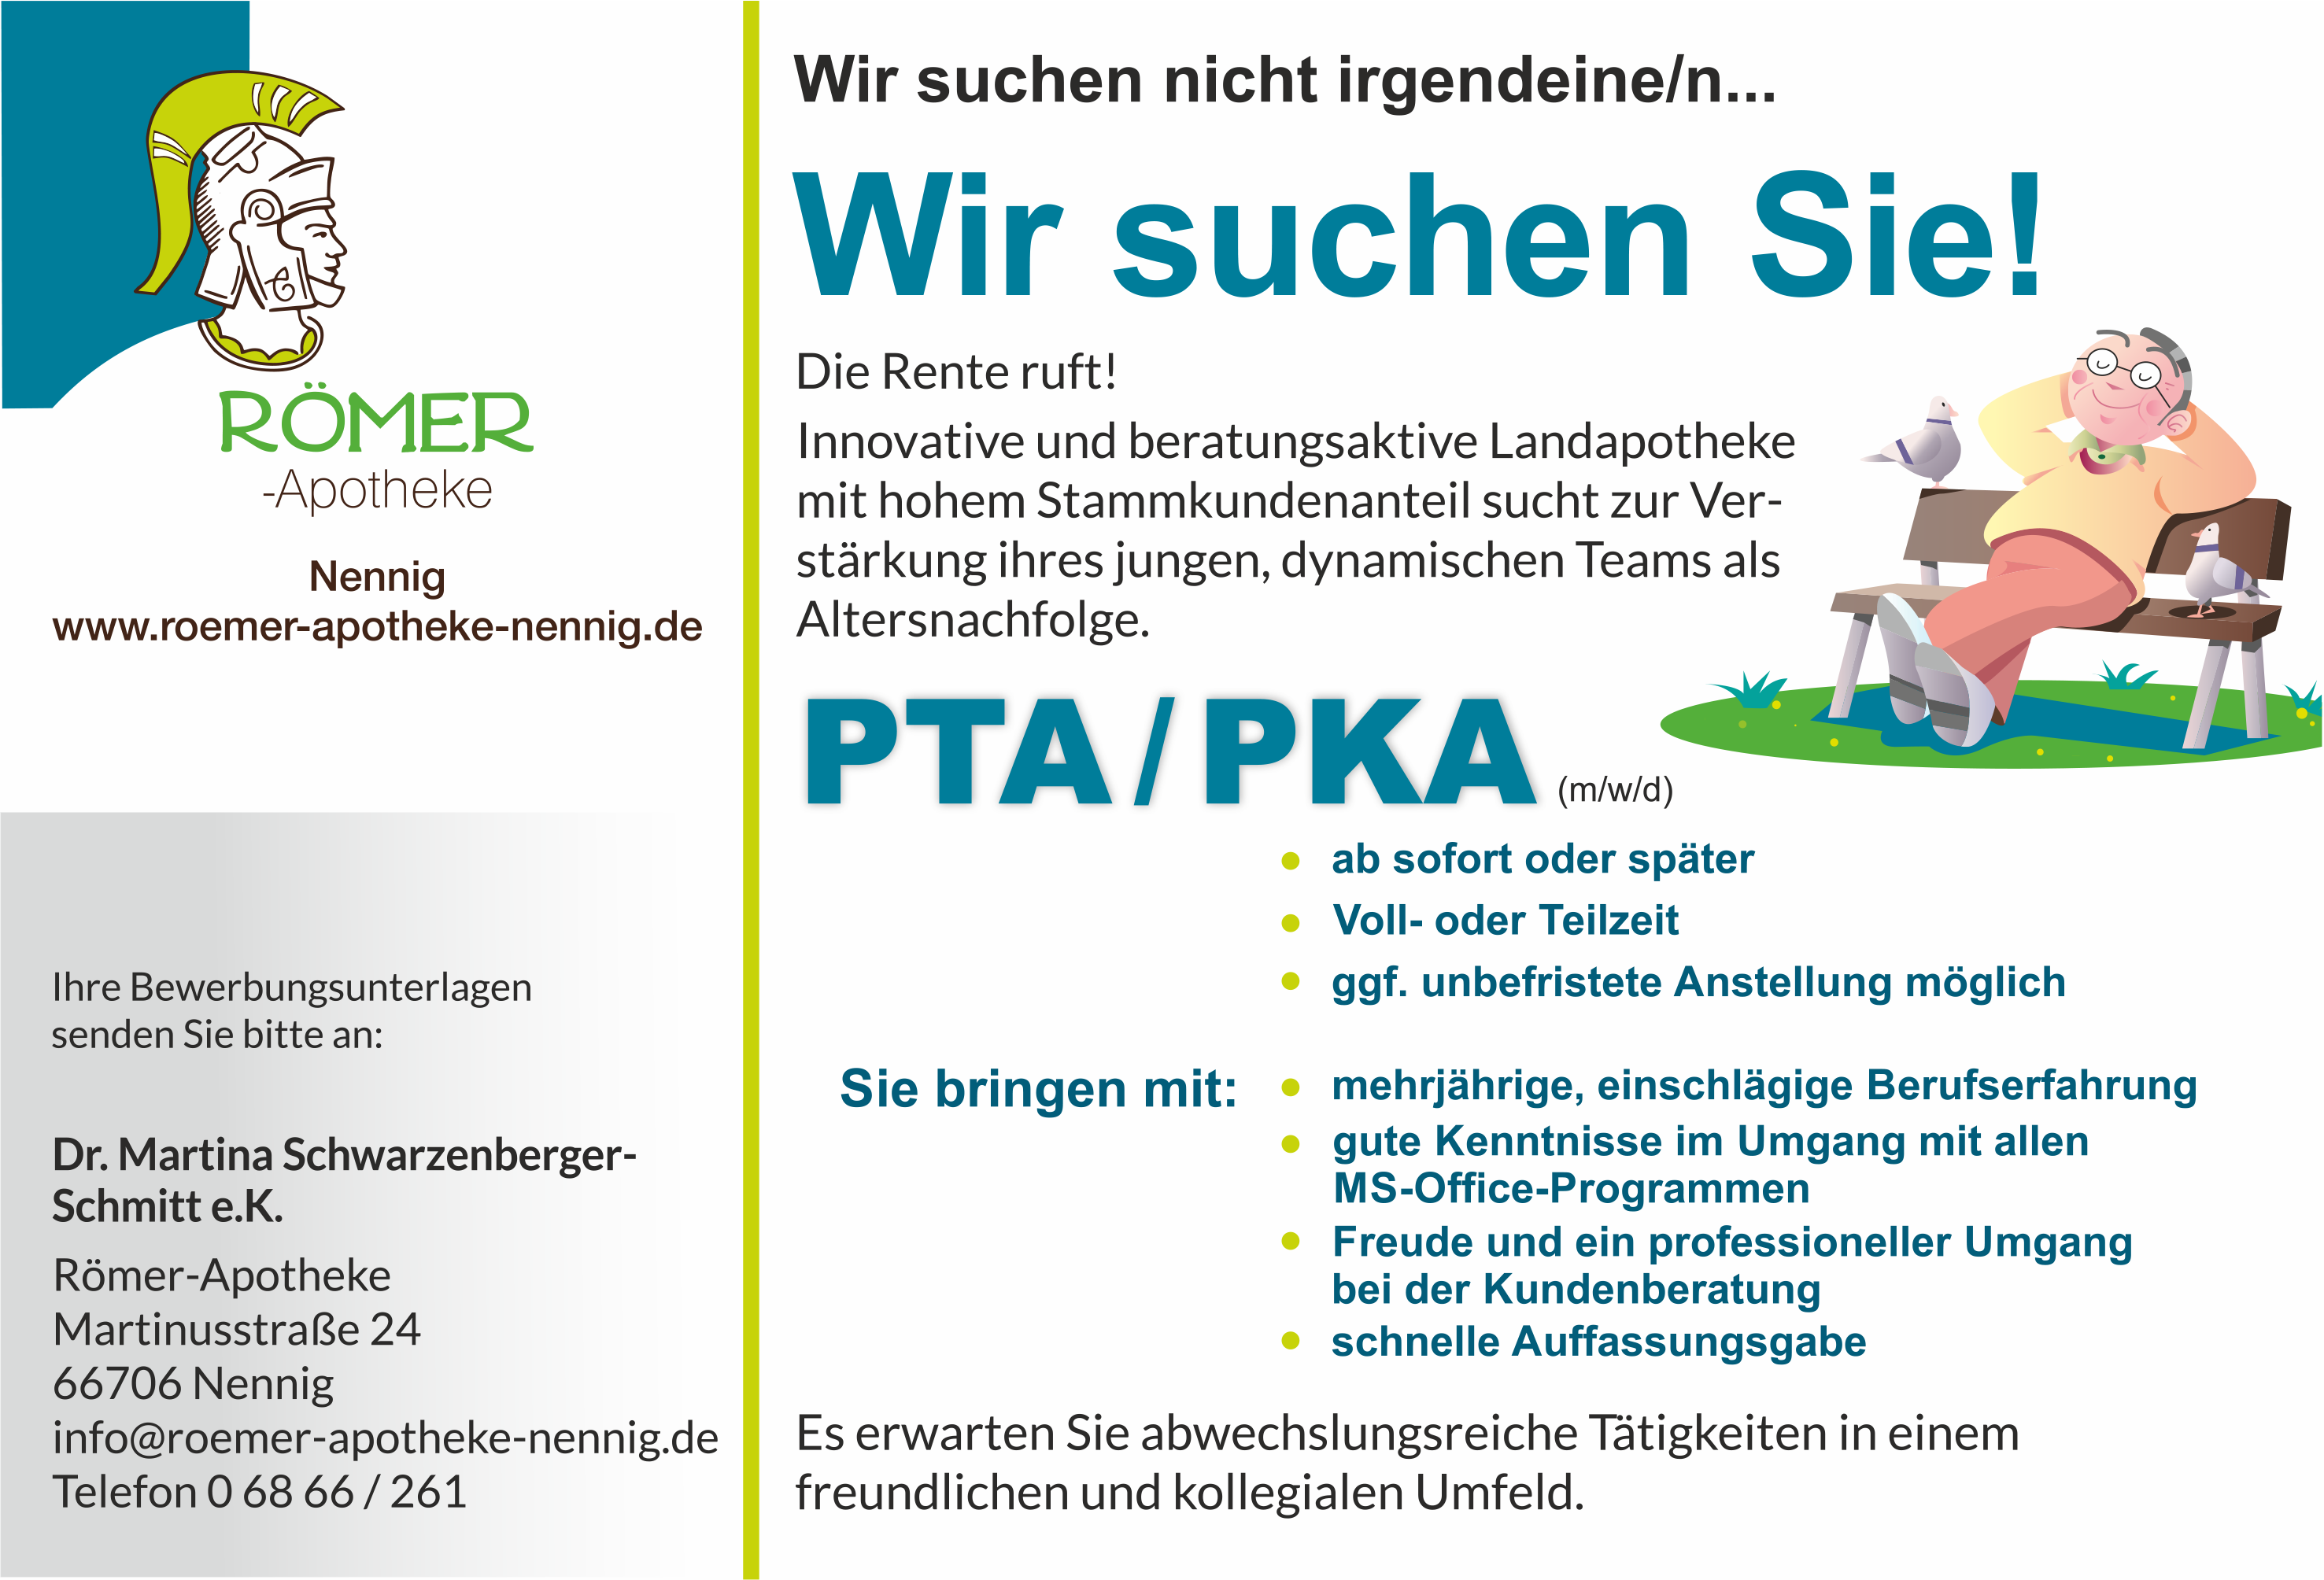 PTA/PKA